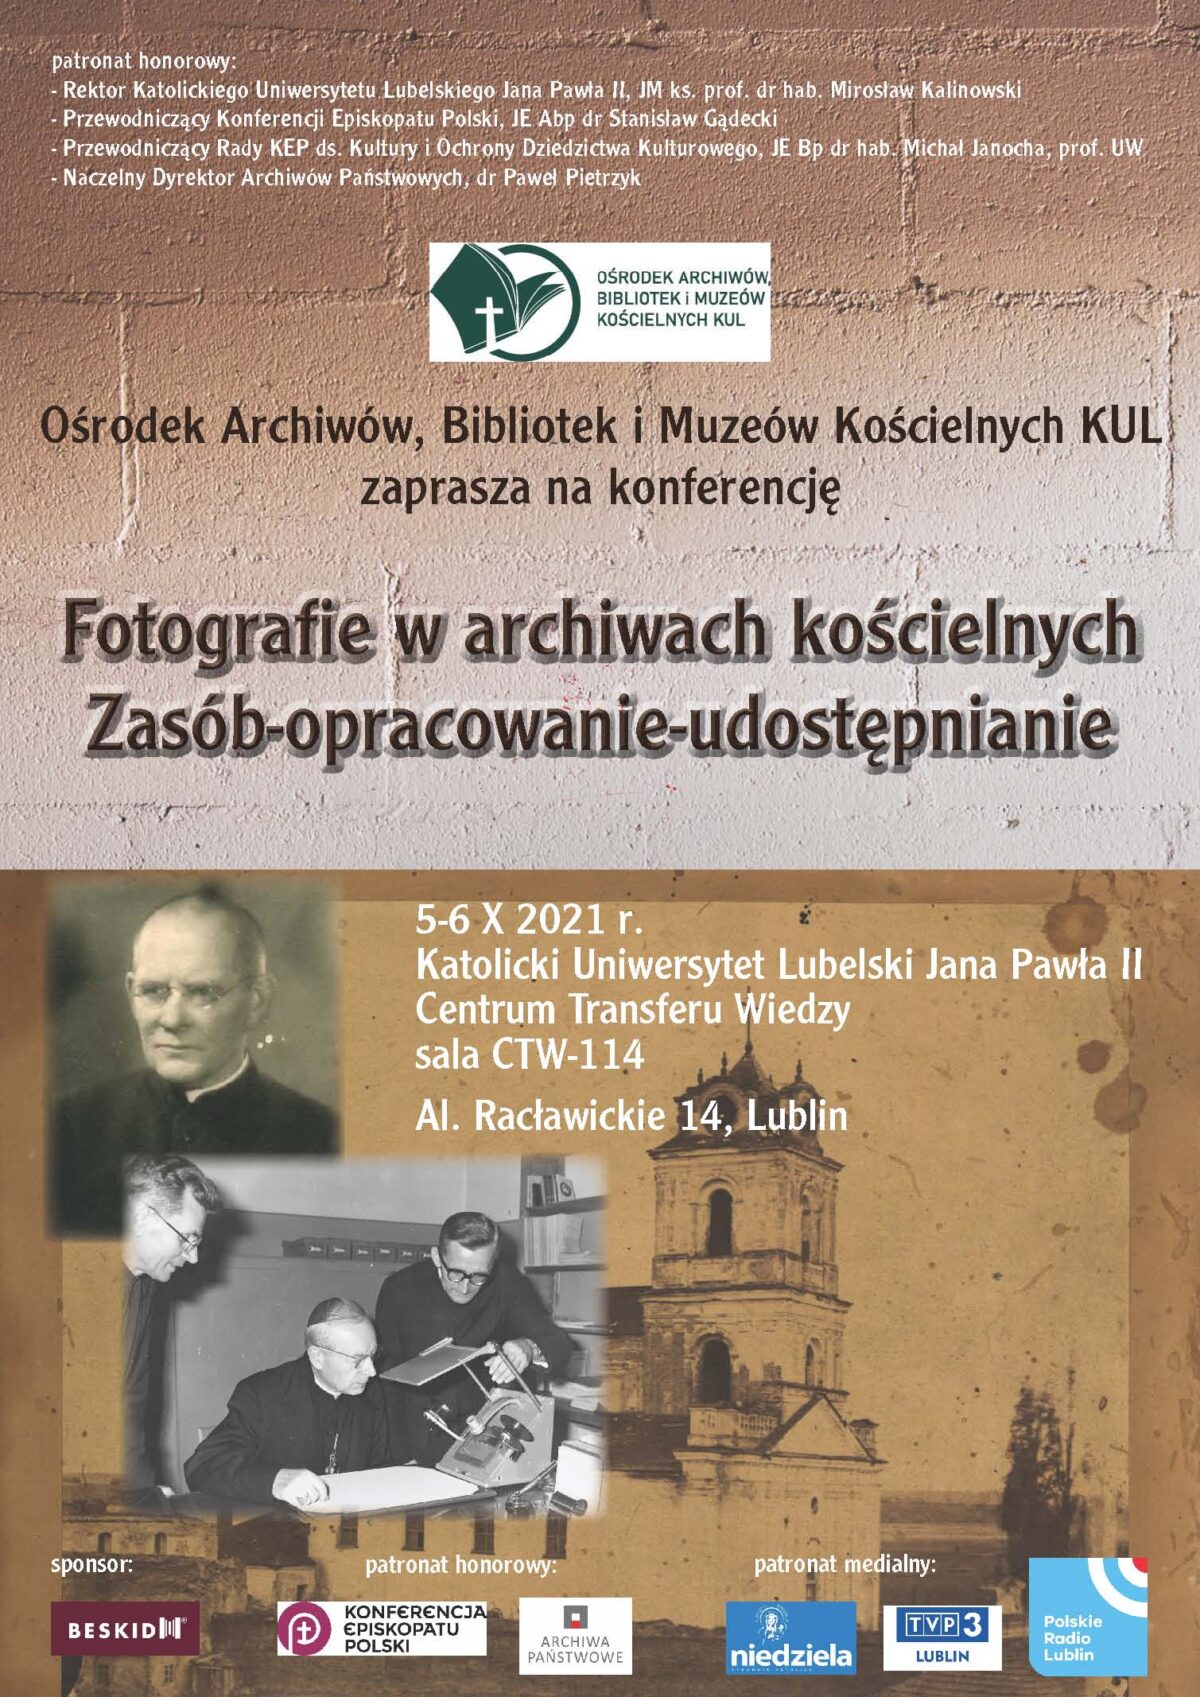 POLSKA: „Fotografie w archiwach kościelnych. Zasób- opracowanie- udostępnianie”- konferencja Ośrodka Archiwów, Bibliotek i Muzeów Kościelnych KUL